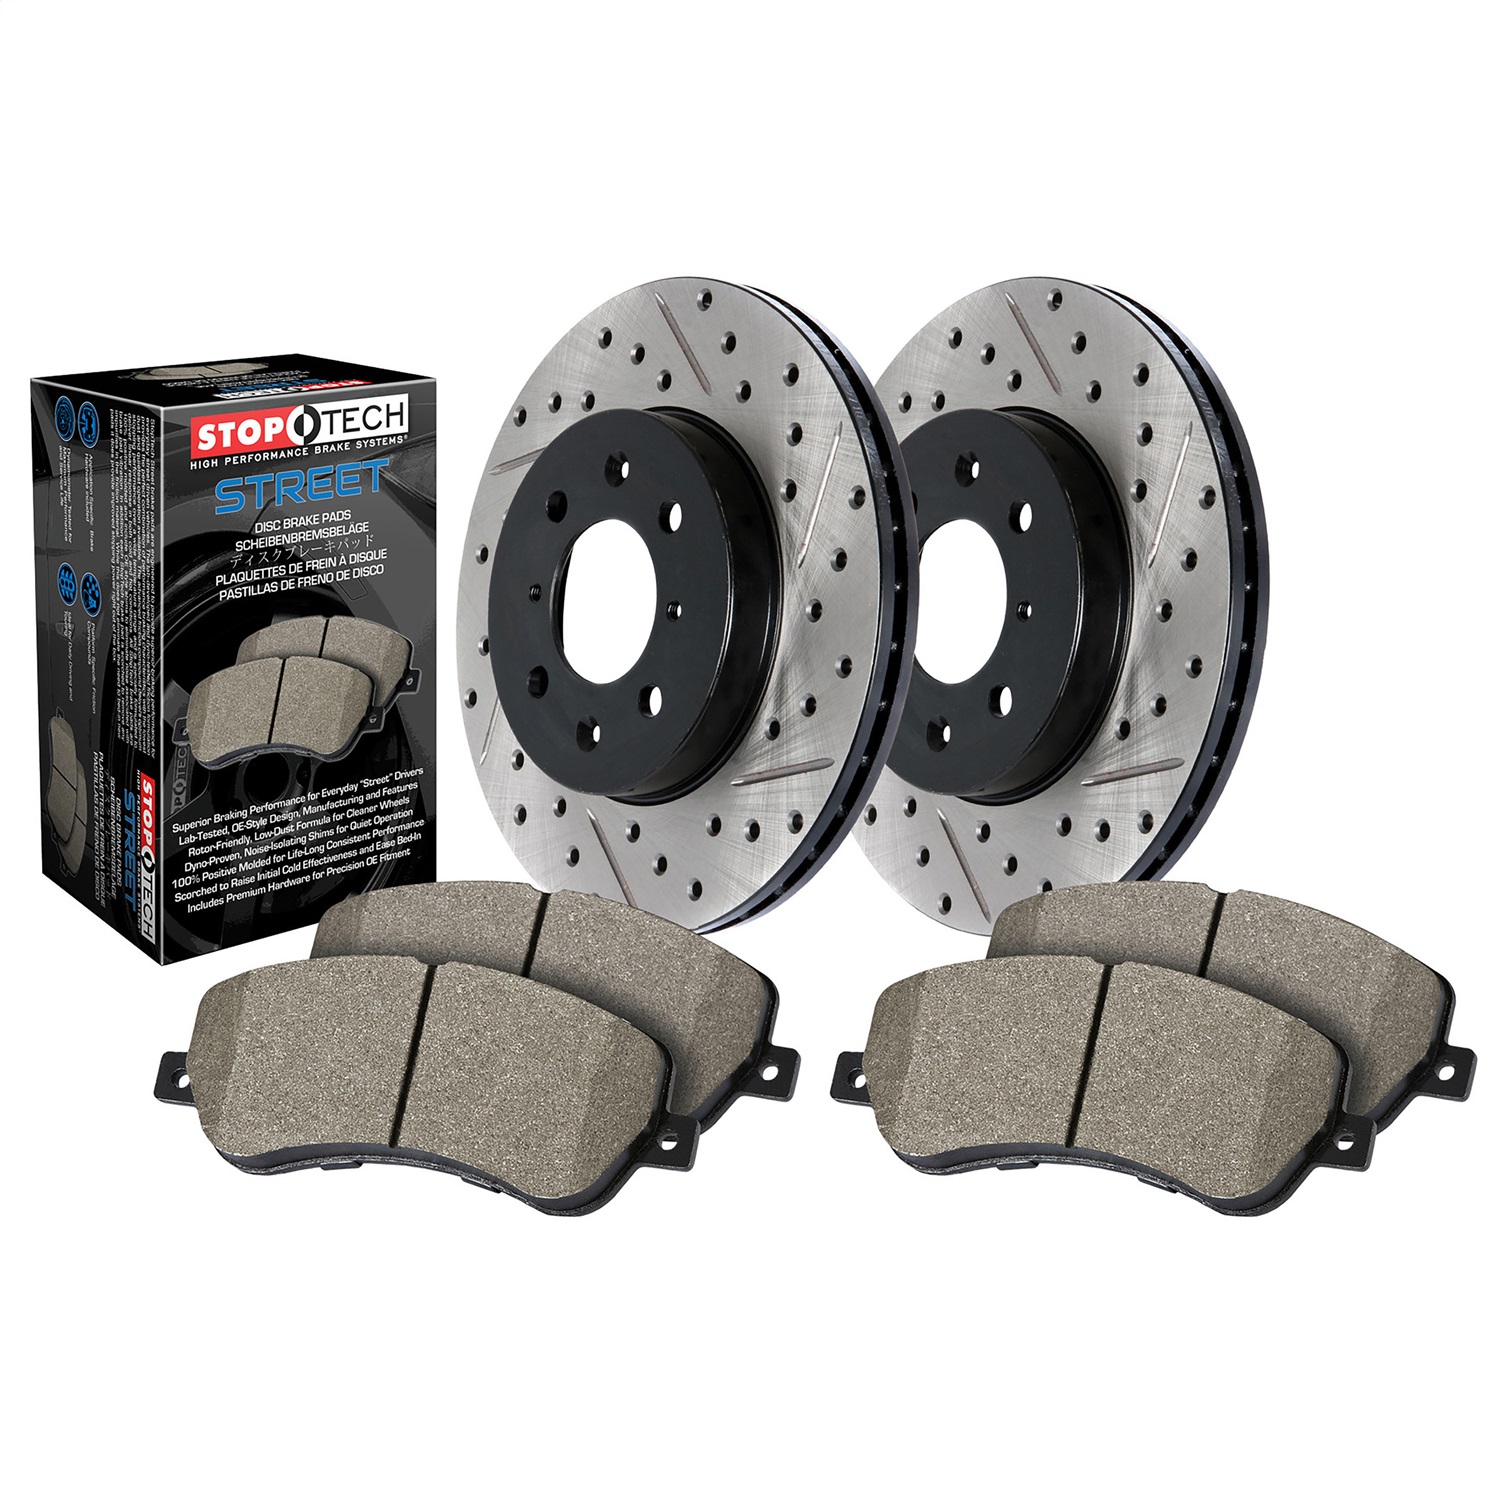 StopTech 938.42001 Disc Brake Upgrade Kit